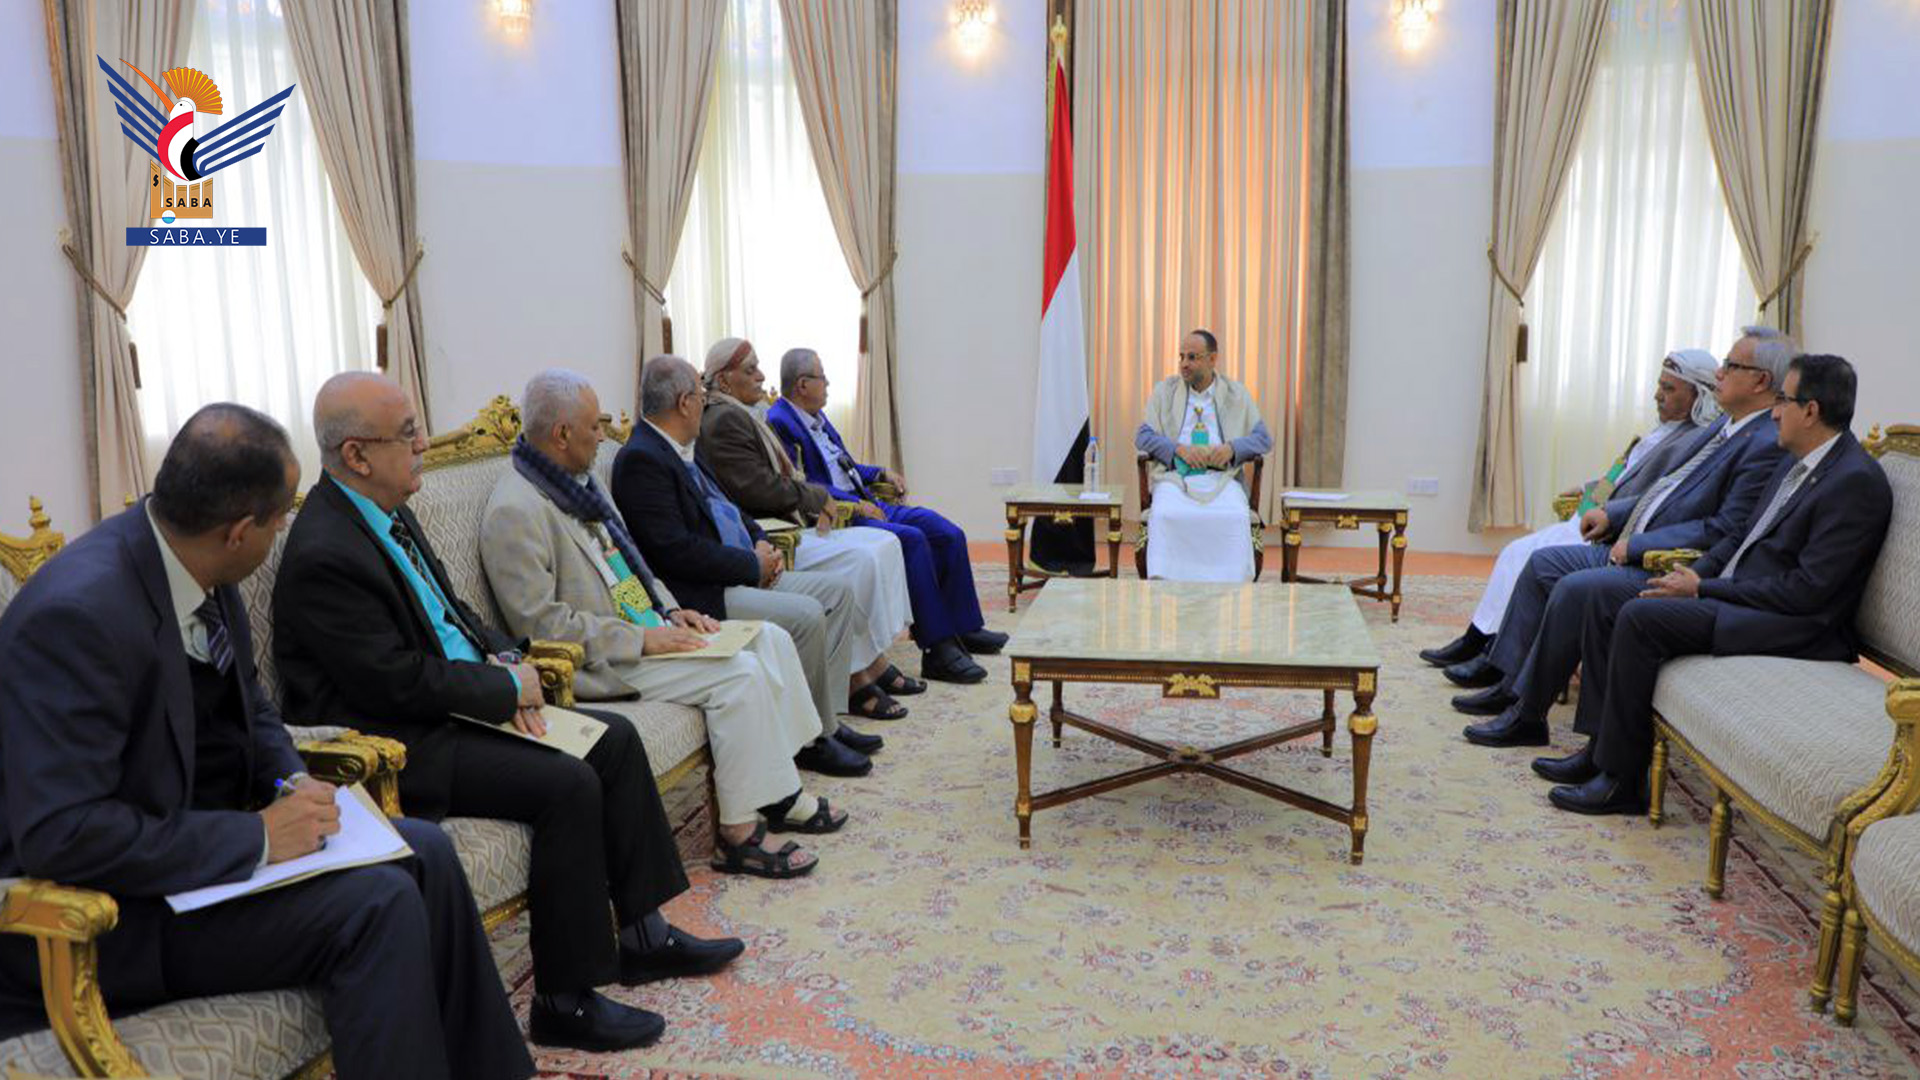 El presidente Al-Mashat informa al Consejo Político y a los Presidentes del Parlamento y Ministros sobre el desarrollo de las consultas.